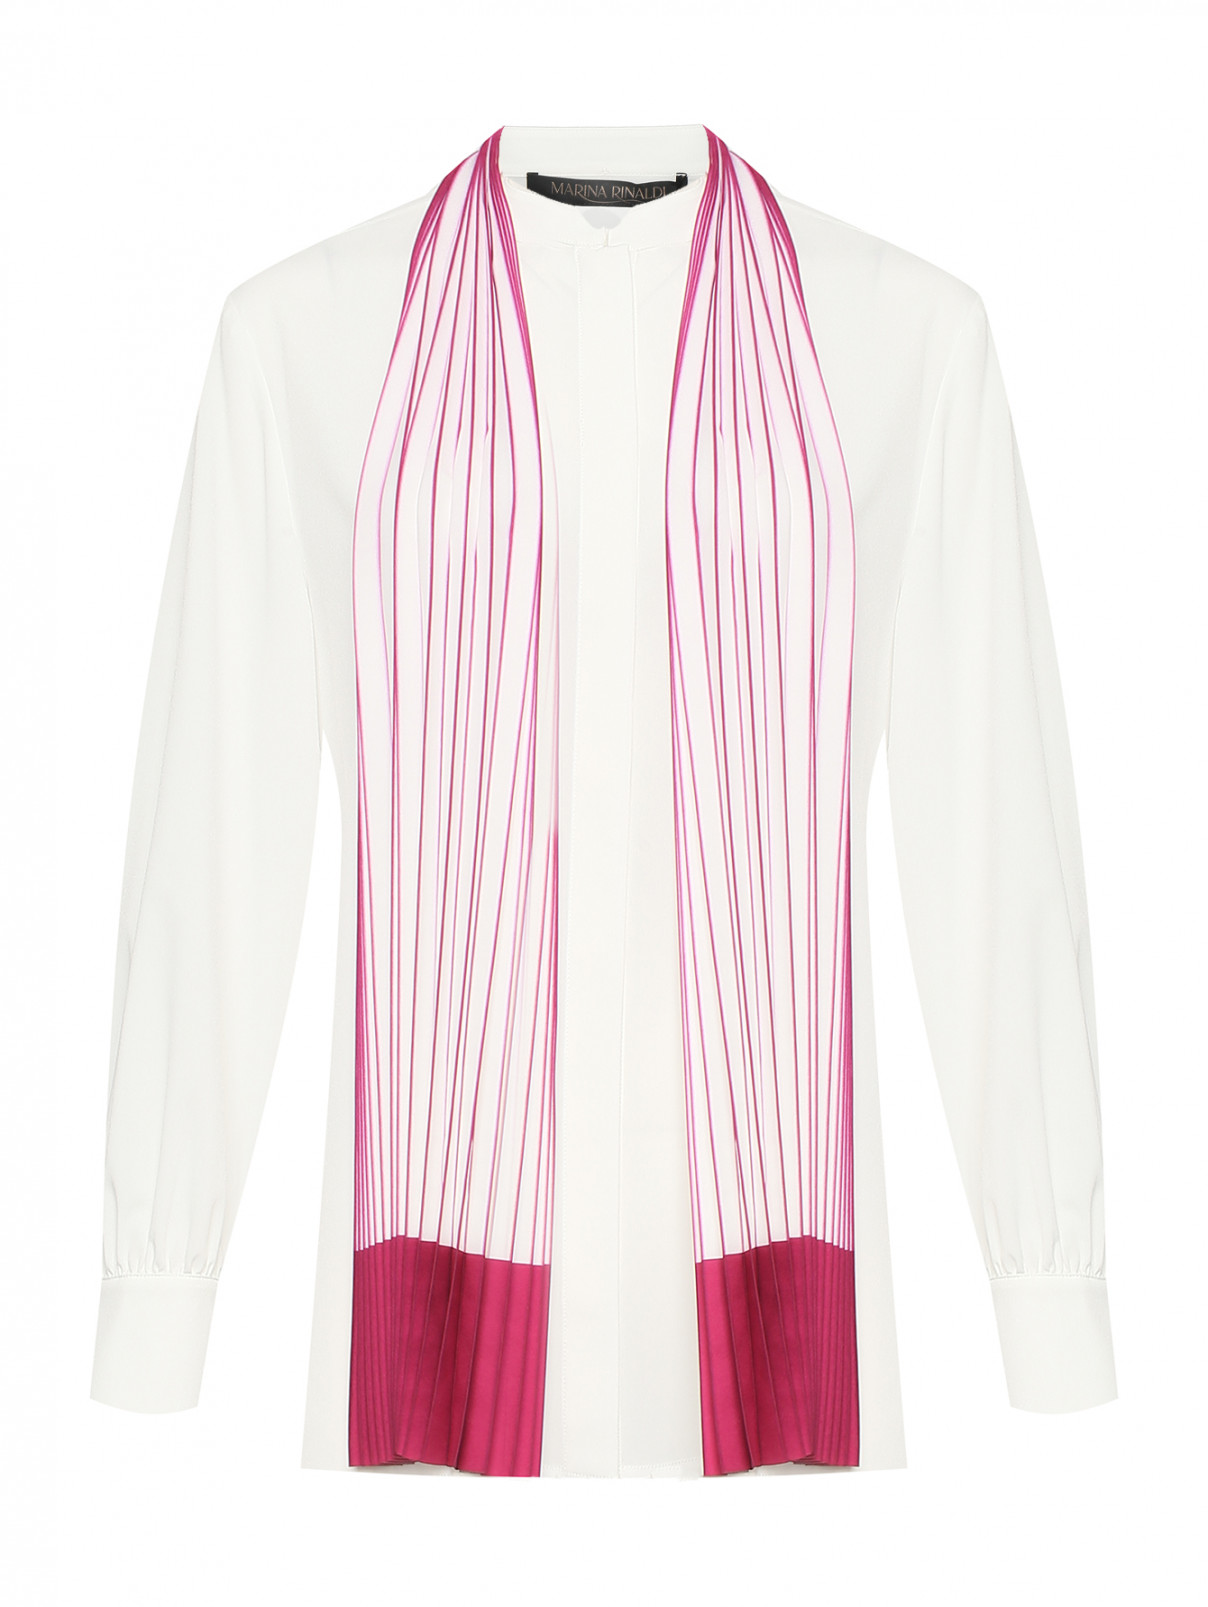 Блуза с плиссированным шарфиком Marina Rinaldi  –  Общий вид  – Цвет:  Белый